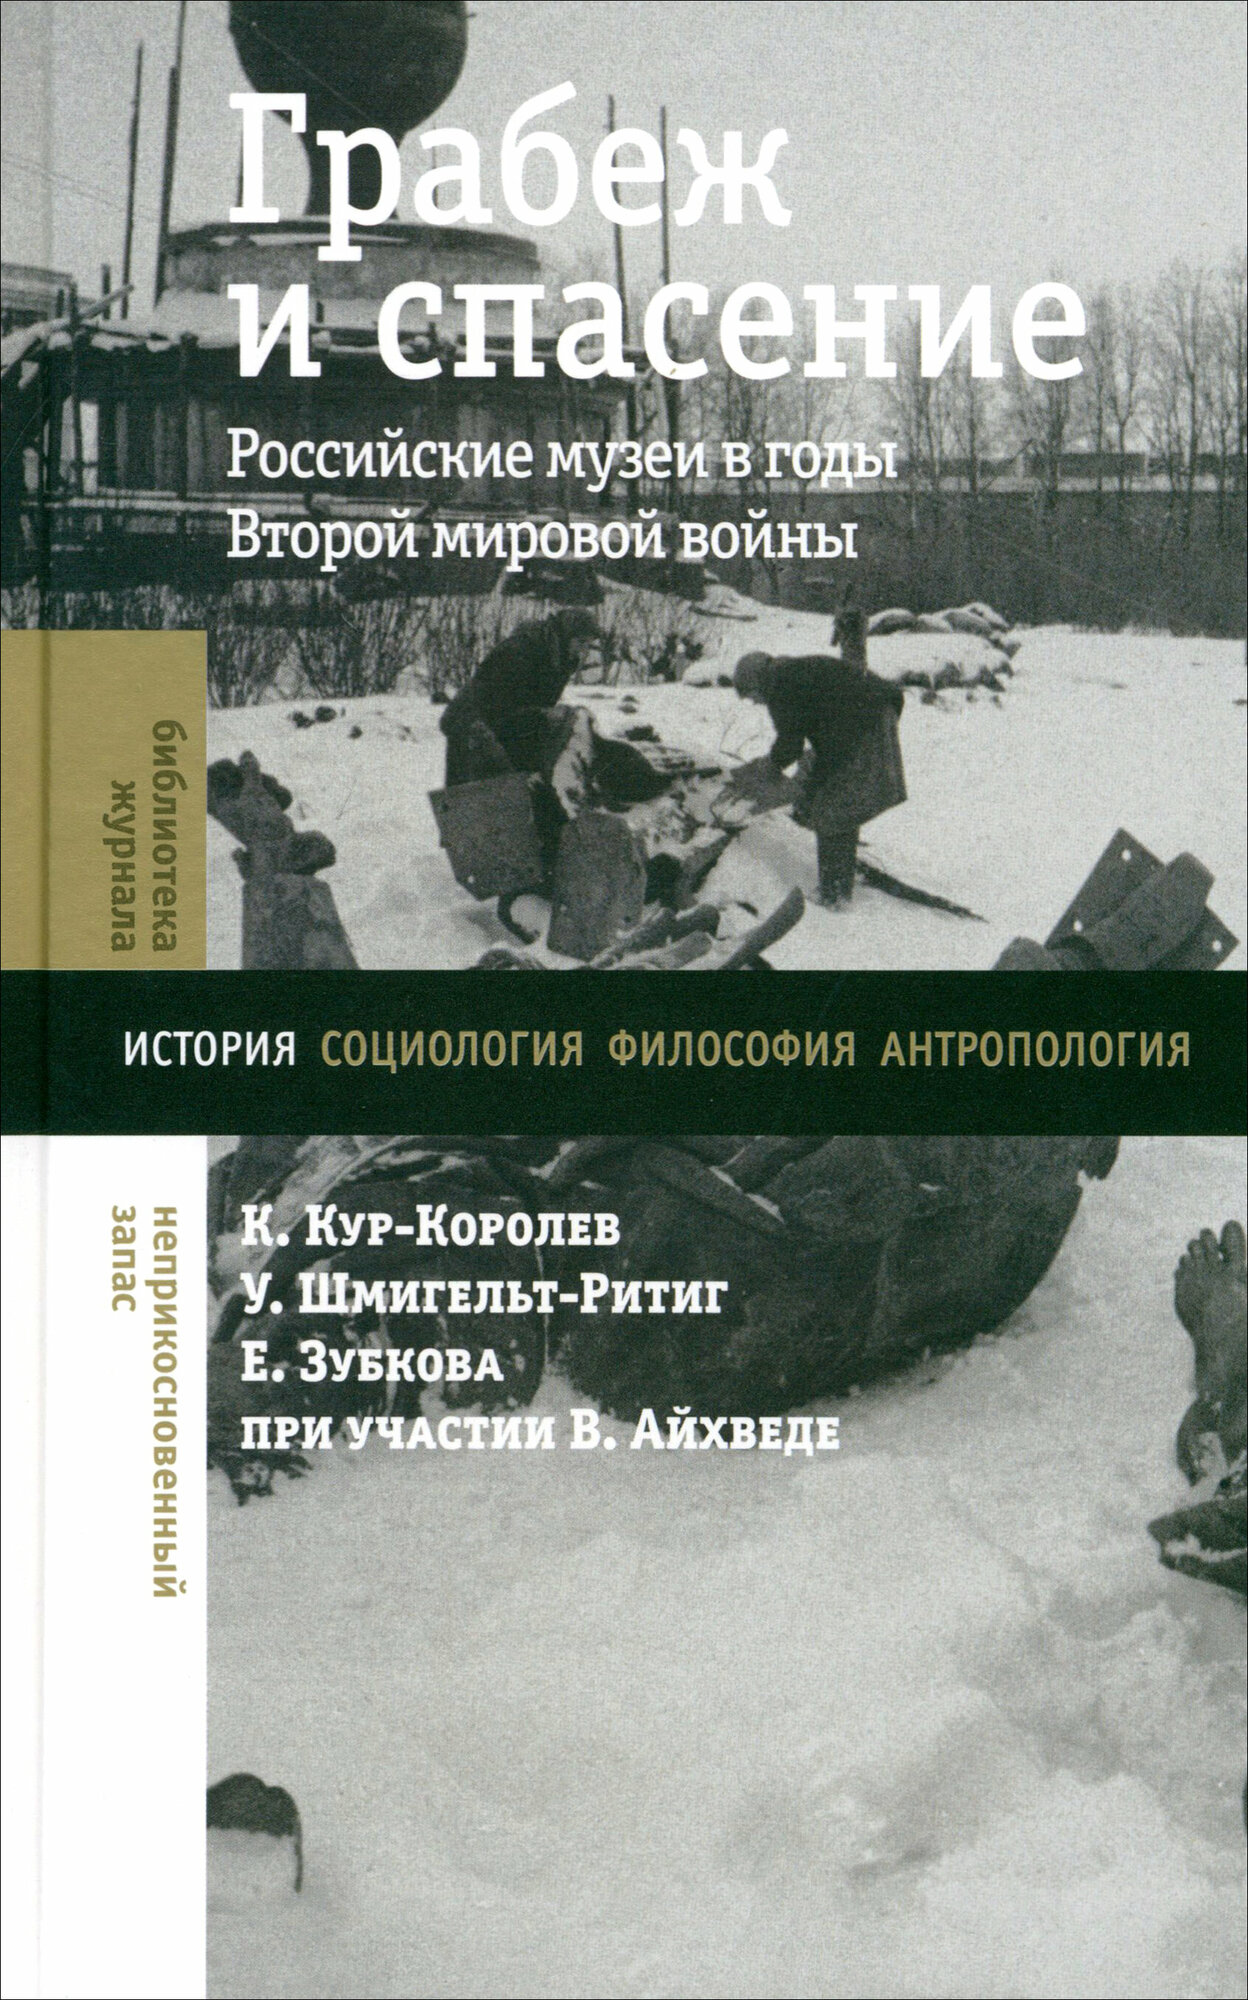 Грабеж и спасение. Российские музеи в годы Второй мировой войны - фото №1